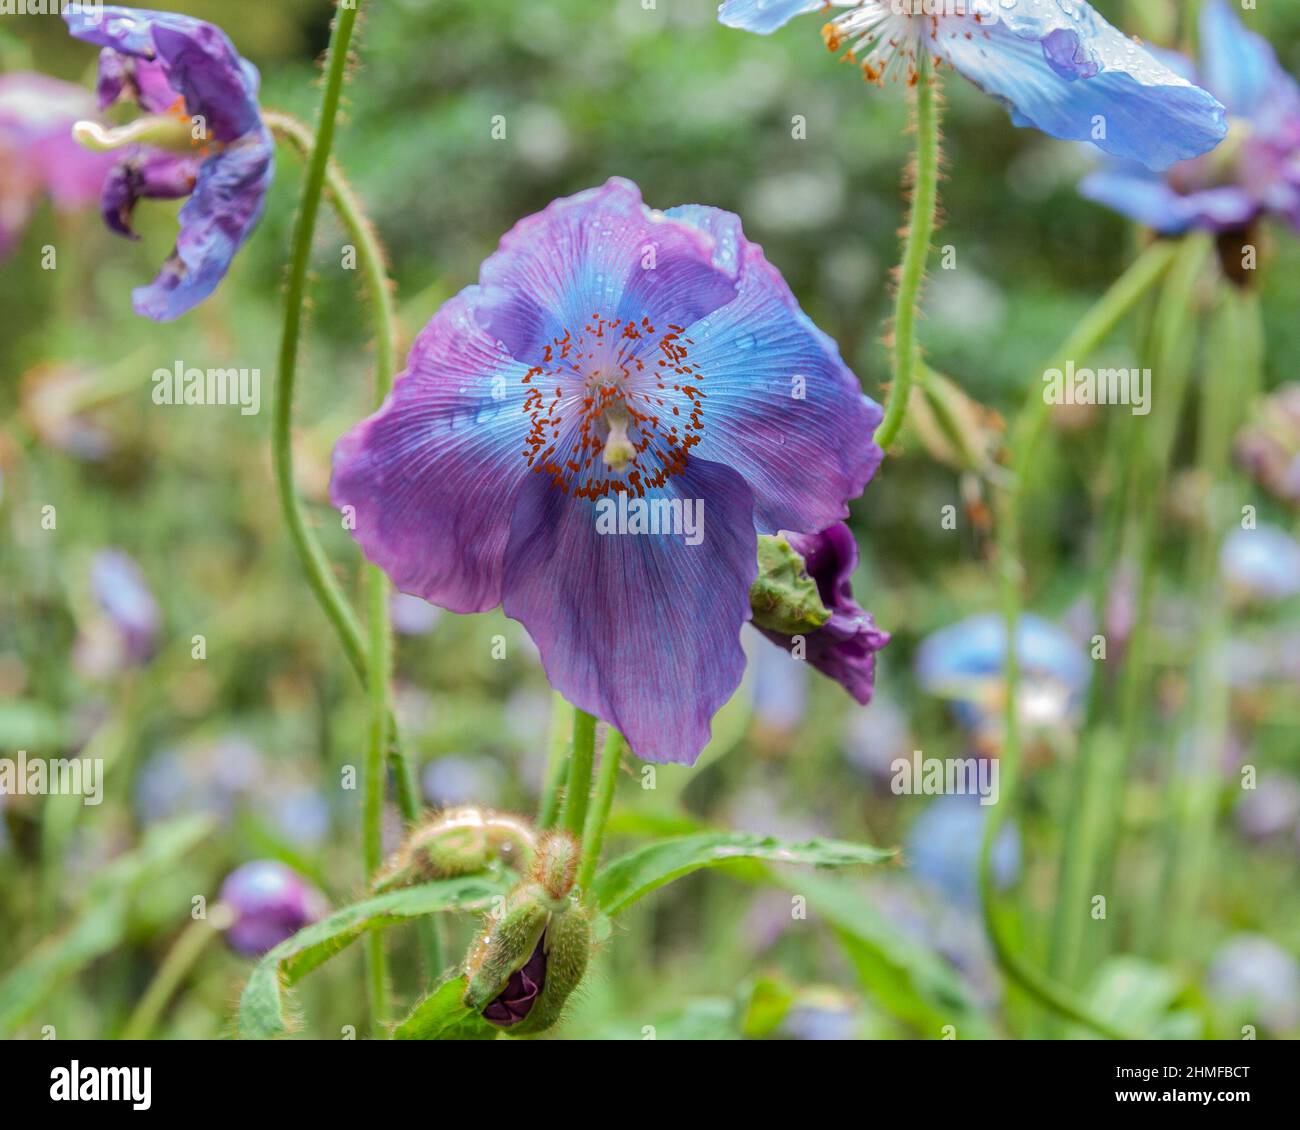 Ein blauer Himalaya-Mohn, Meconopsis, der violette Töne hat und zwischen einer Mischung aus himmelblauen und violett-violetten Blüten wächst. Stockfoto